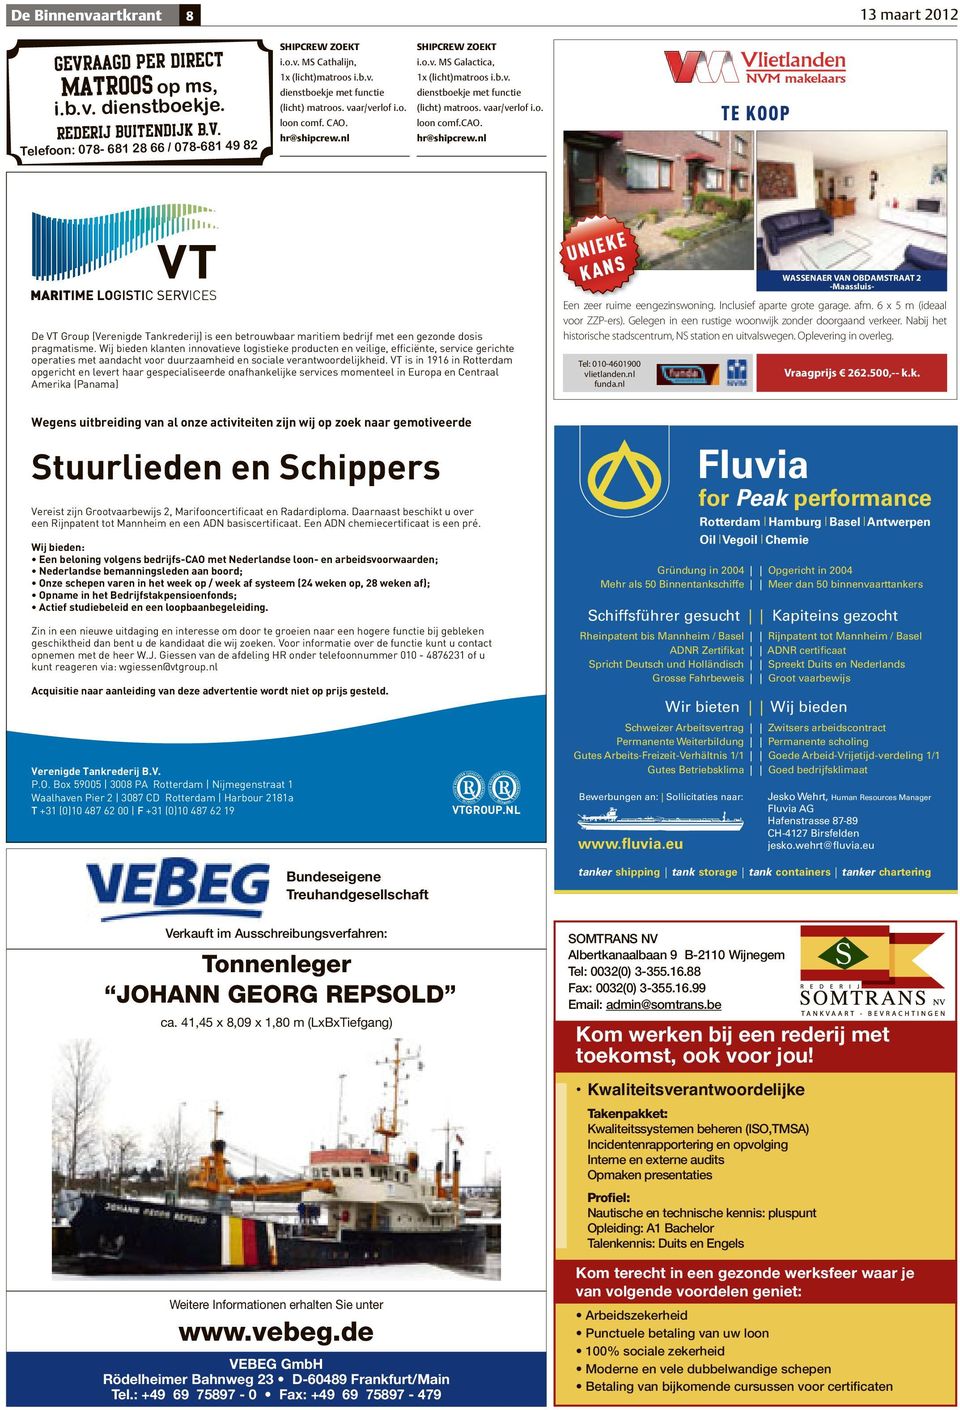 nl hr@shipcrew.nl TE KOOP De VT Group (Verenigde Tankrederij) is een betrouwbaar maritiem bedrijf met een gezonde dosis pragmatisme.